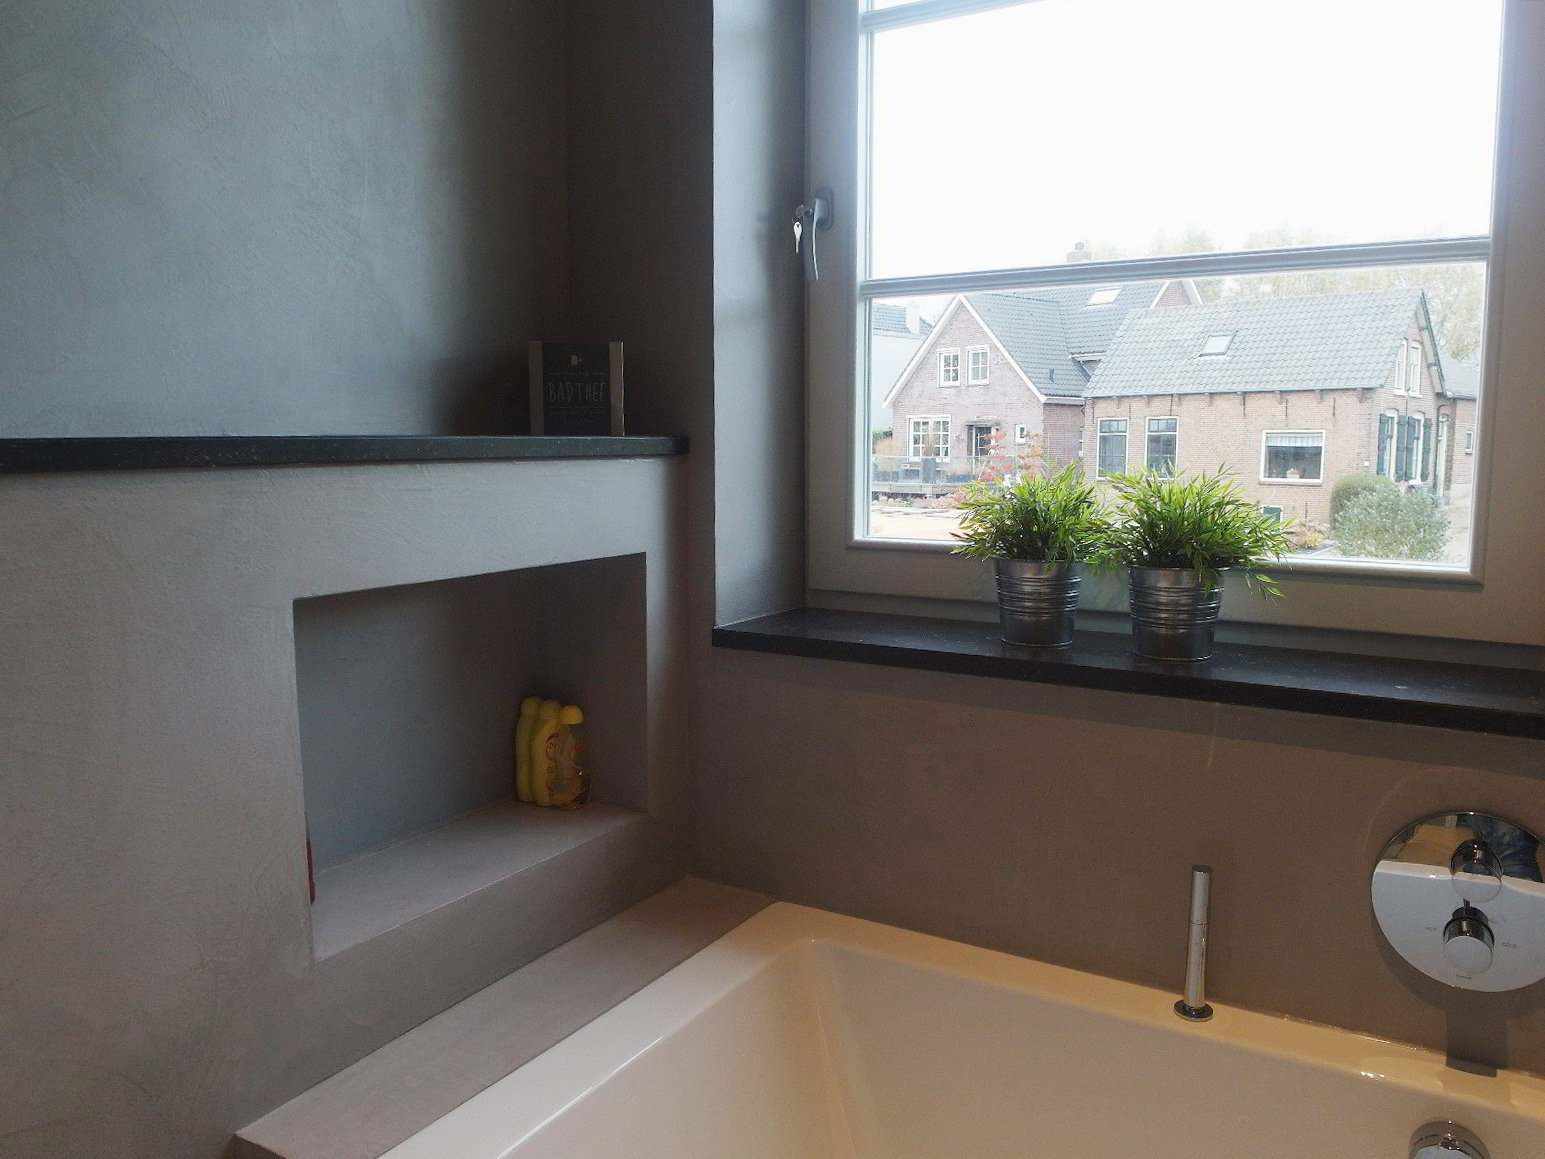 Mikrocement na ścianie, podłodze i meblach w łazience w Holandii w projekcie Decas.